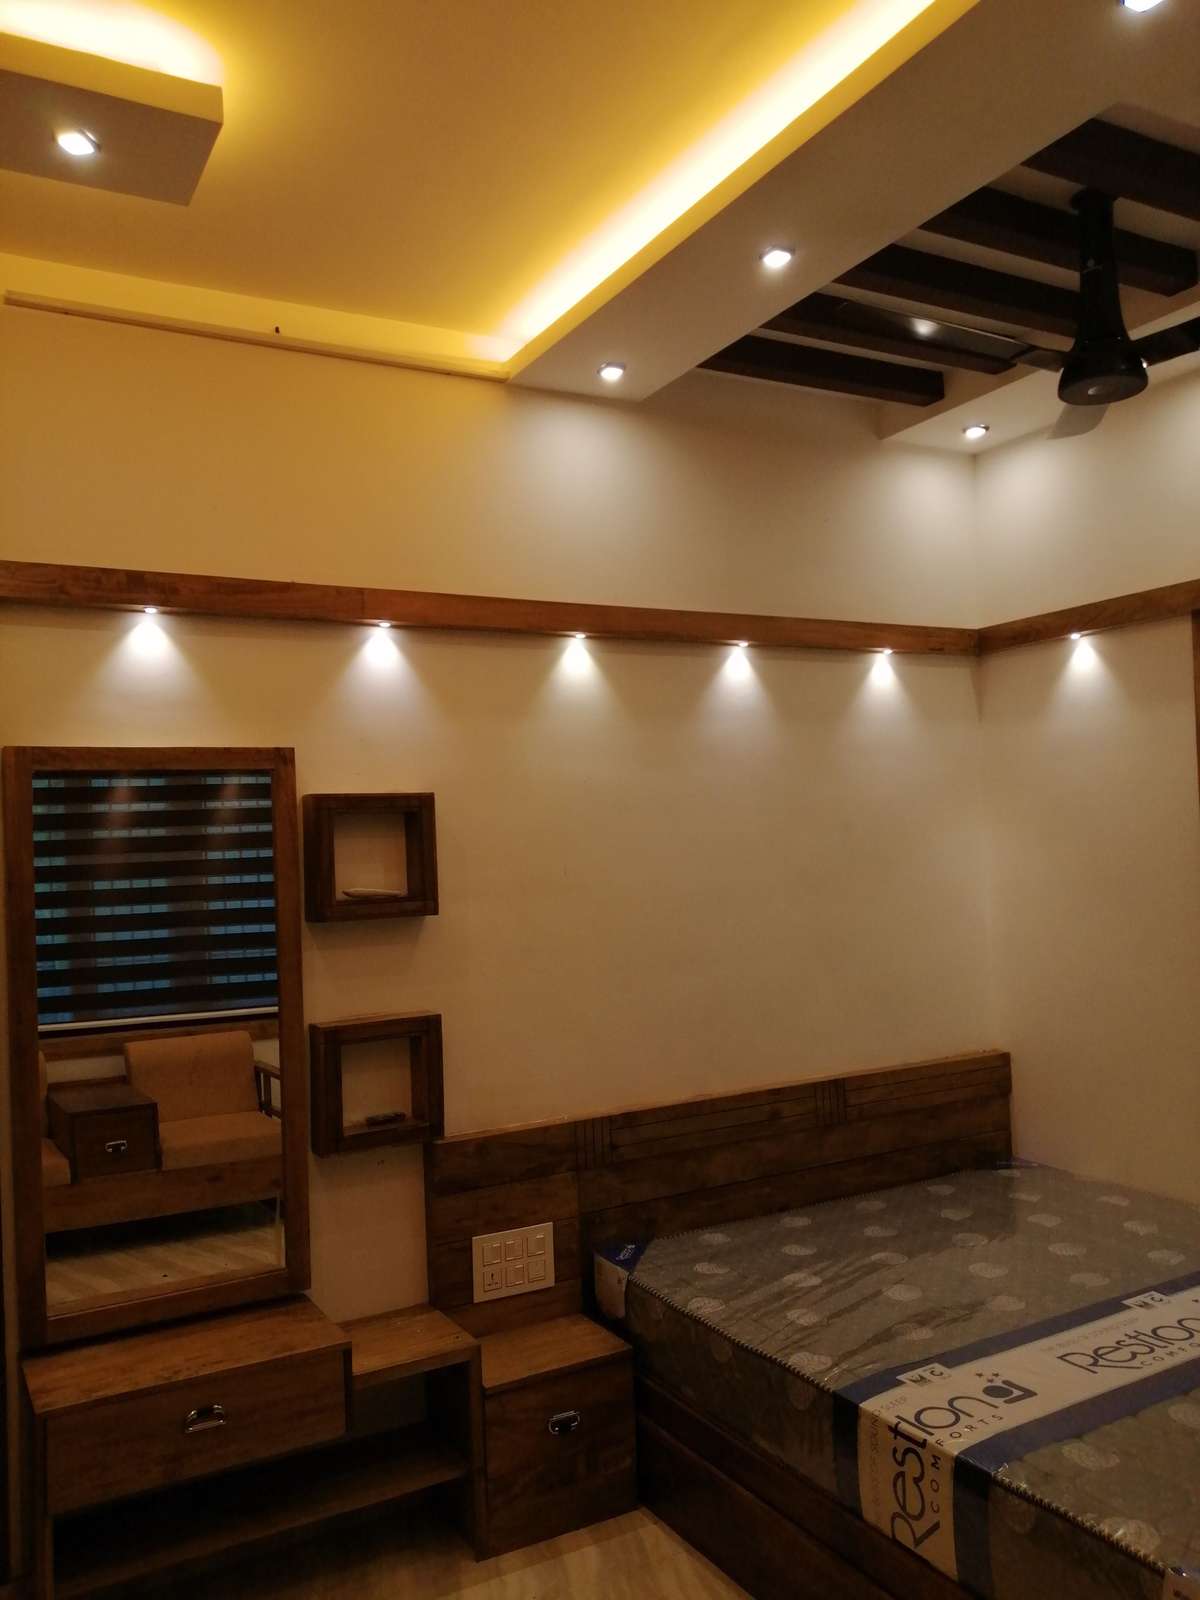 Bedroom, Furniture, Lighting, Storage Designs by Plumber Muhsin Alijan, Kannur | Kolo